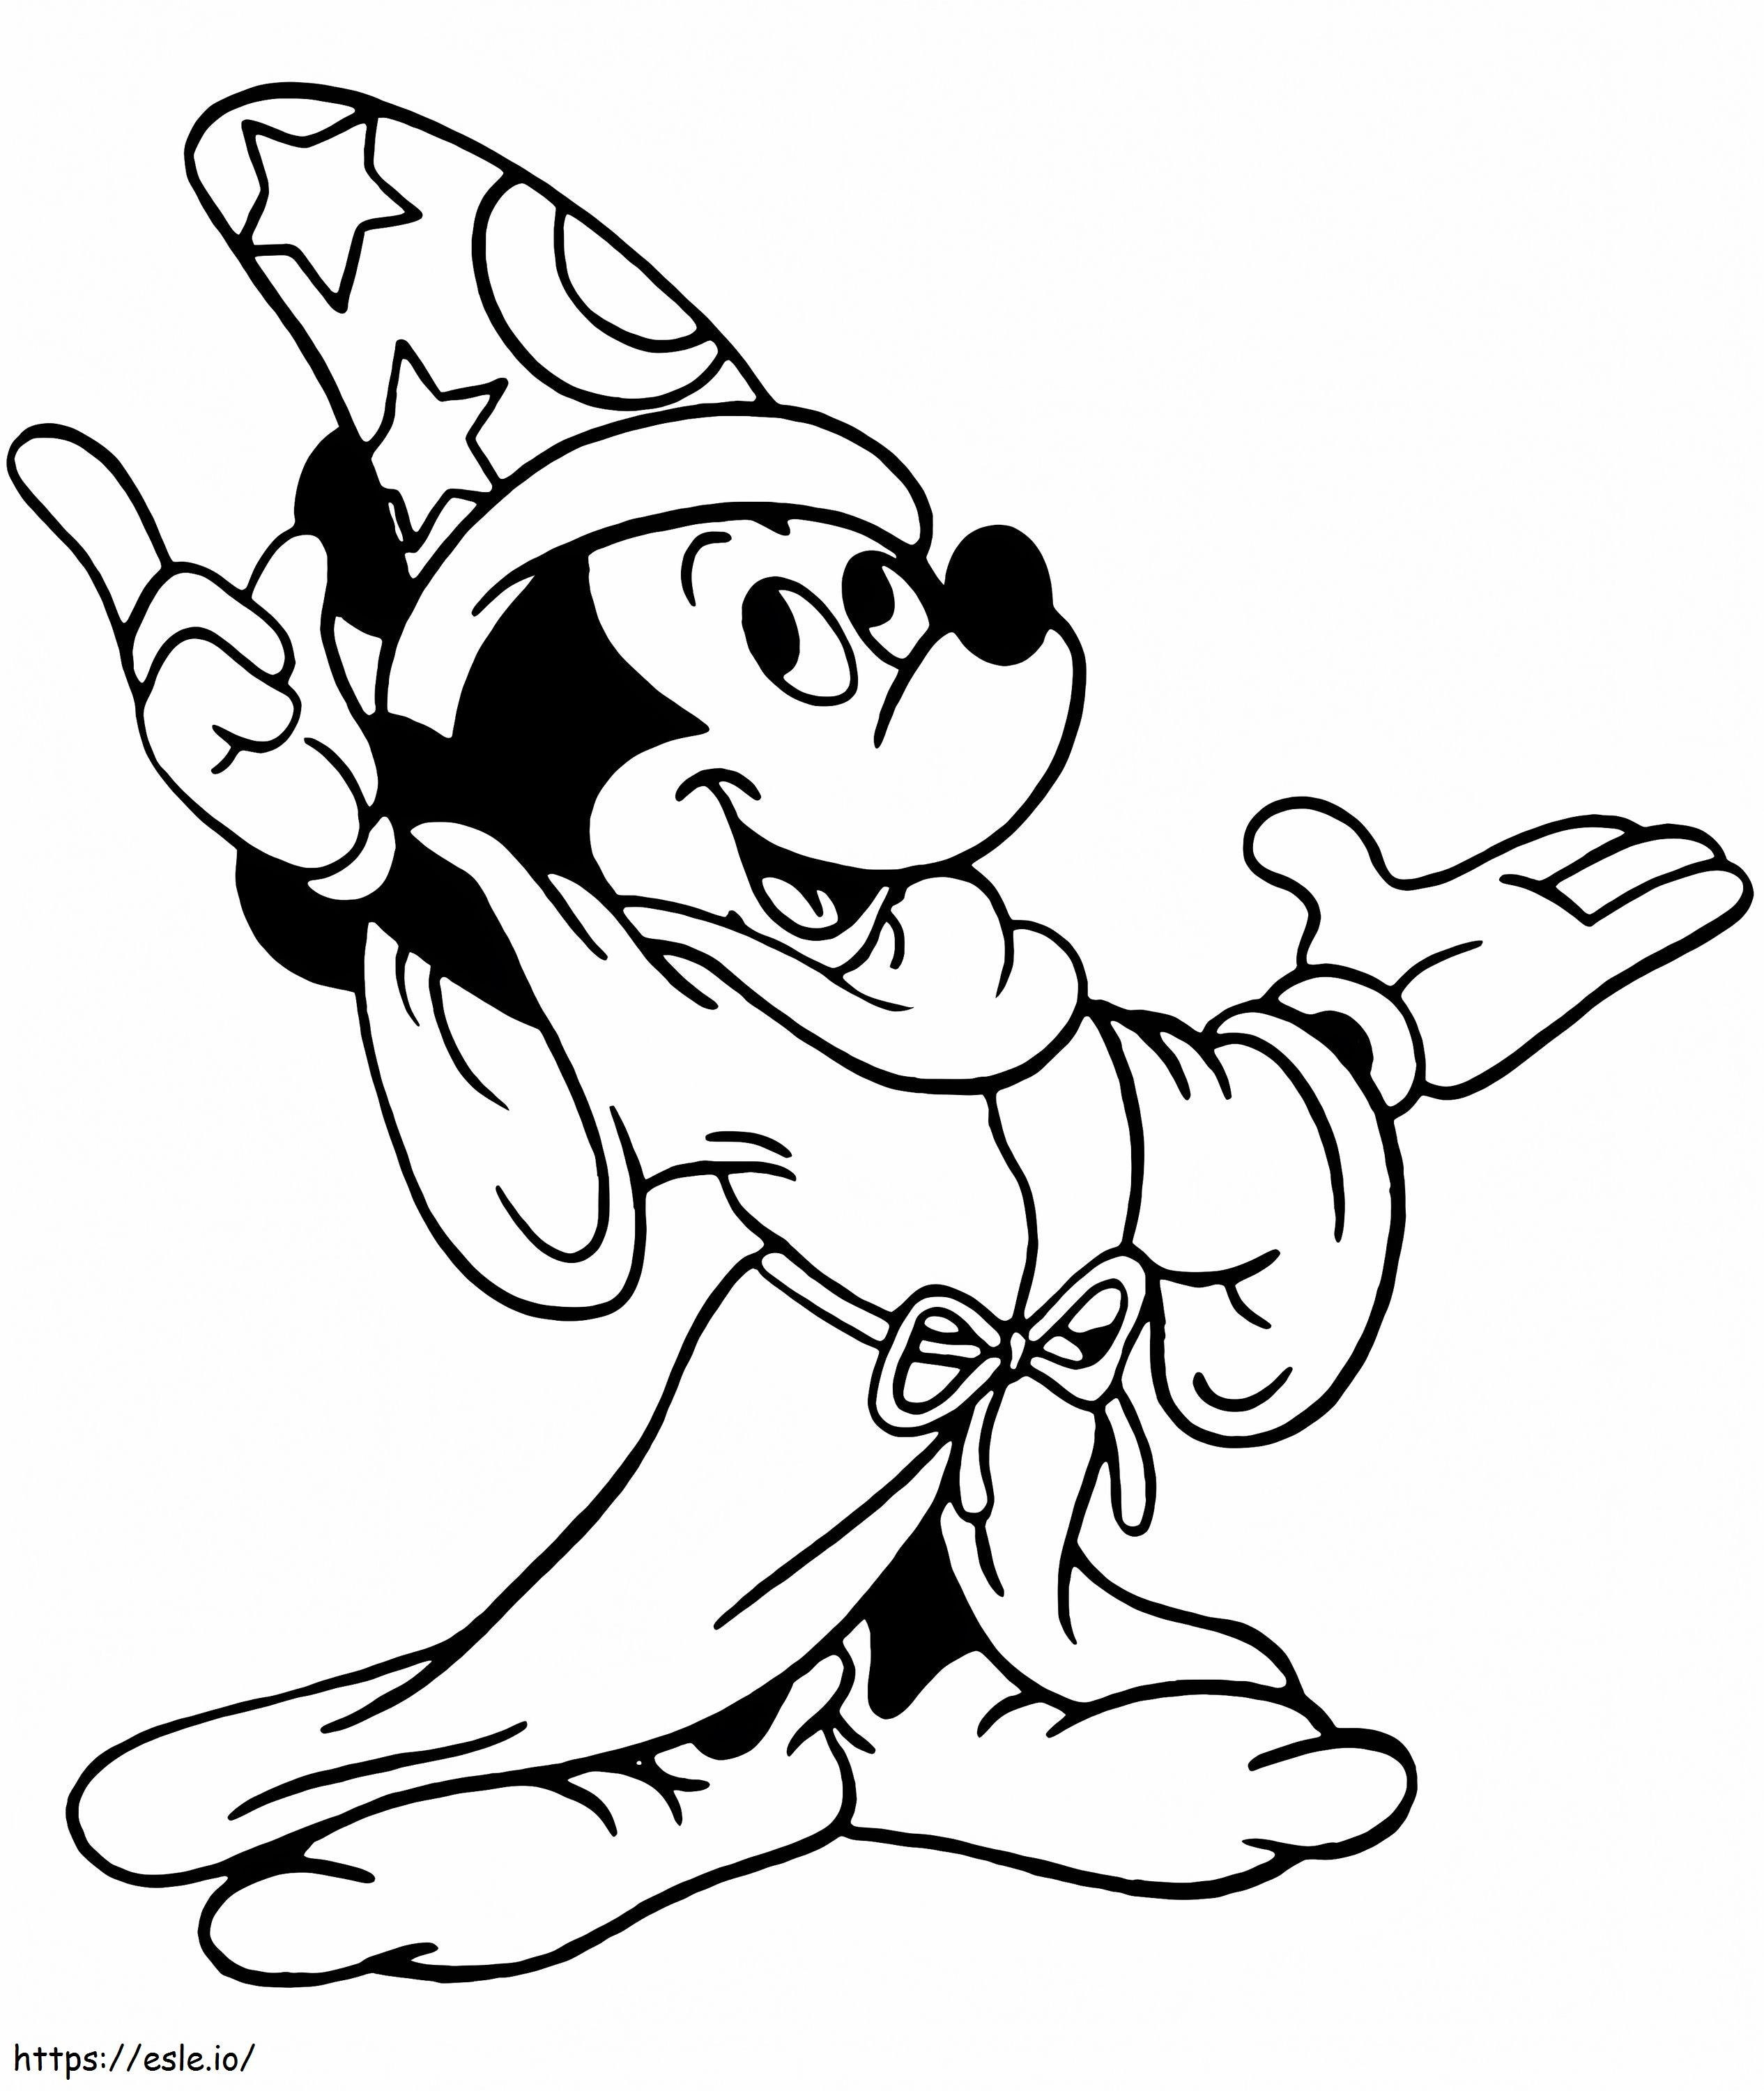 Coloriage Mickey Mouse magicien à imprimer dessin